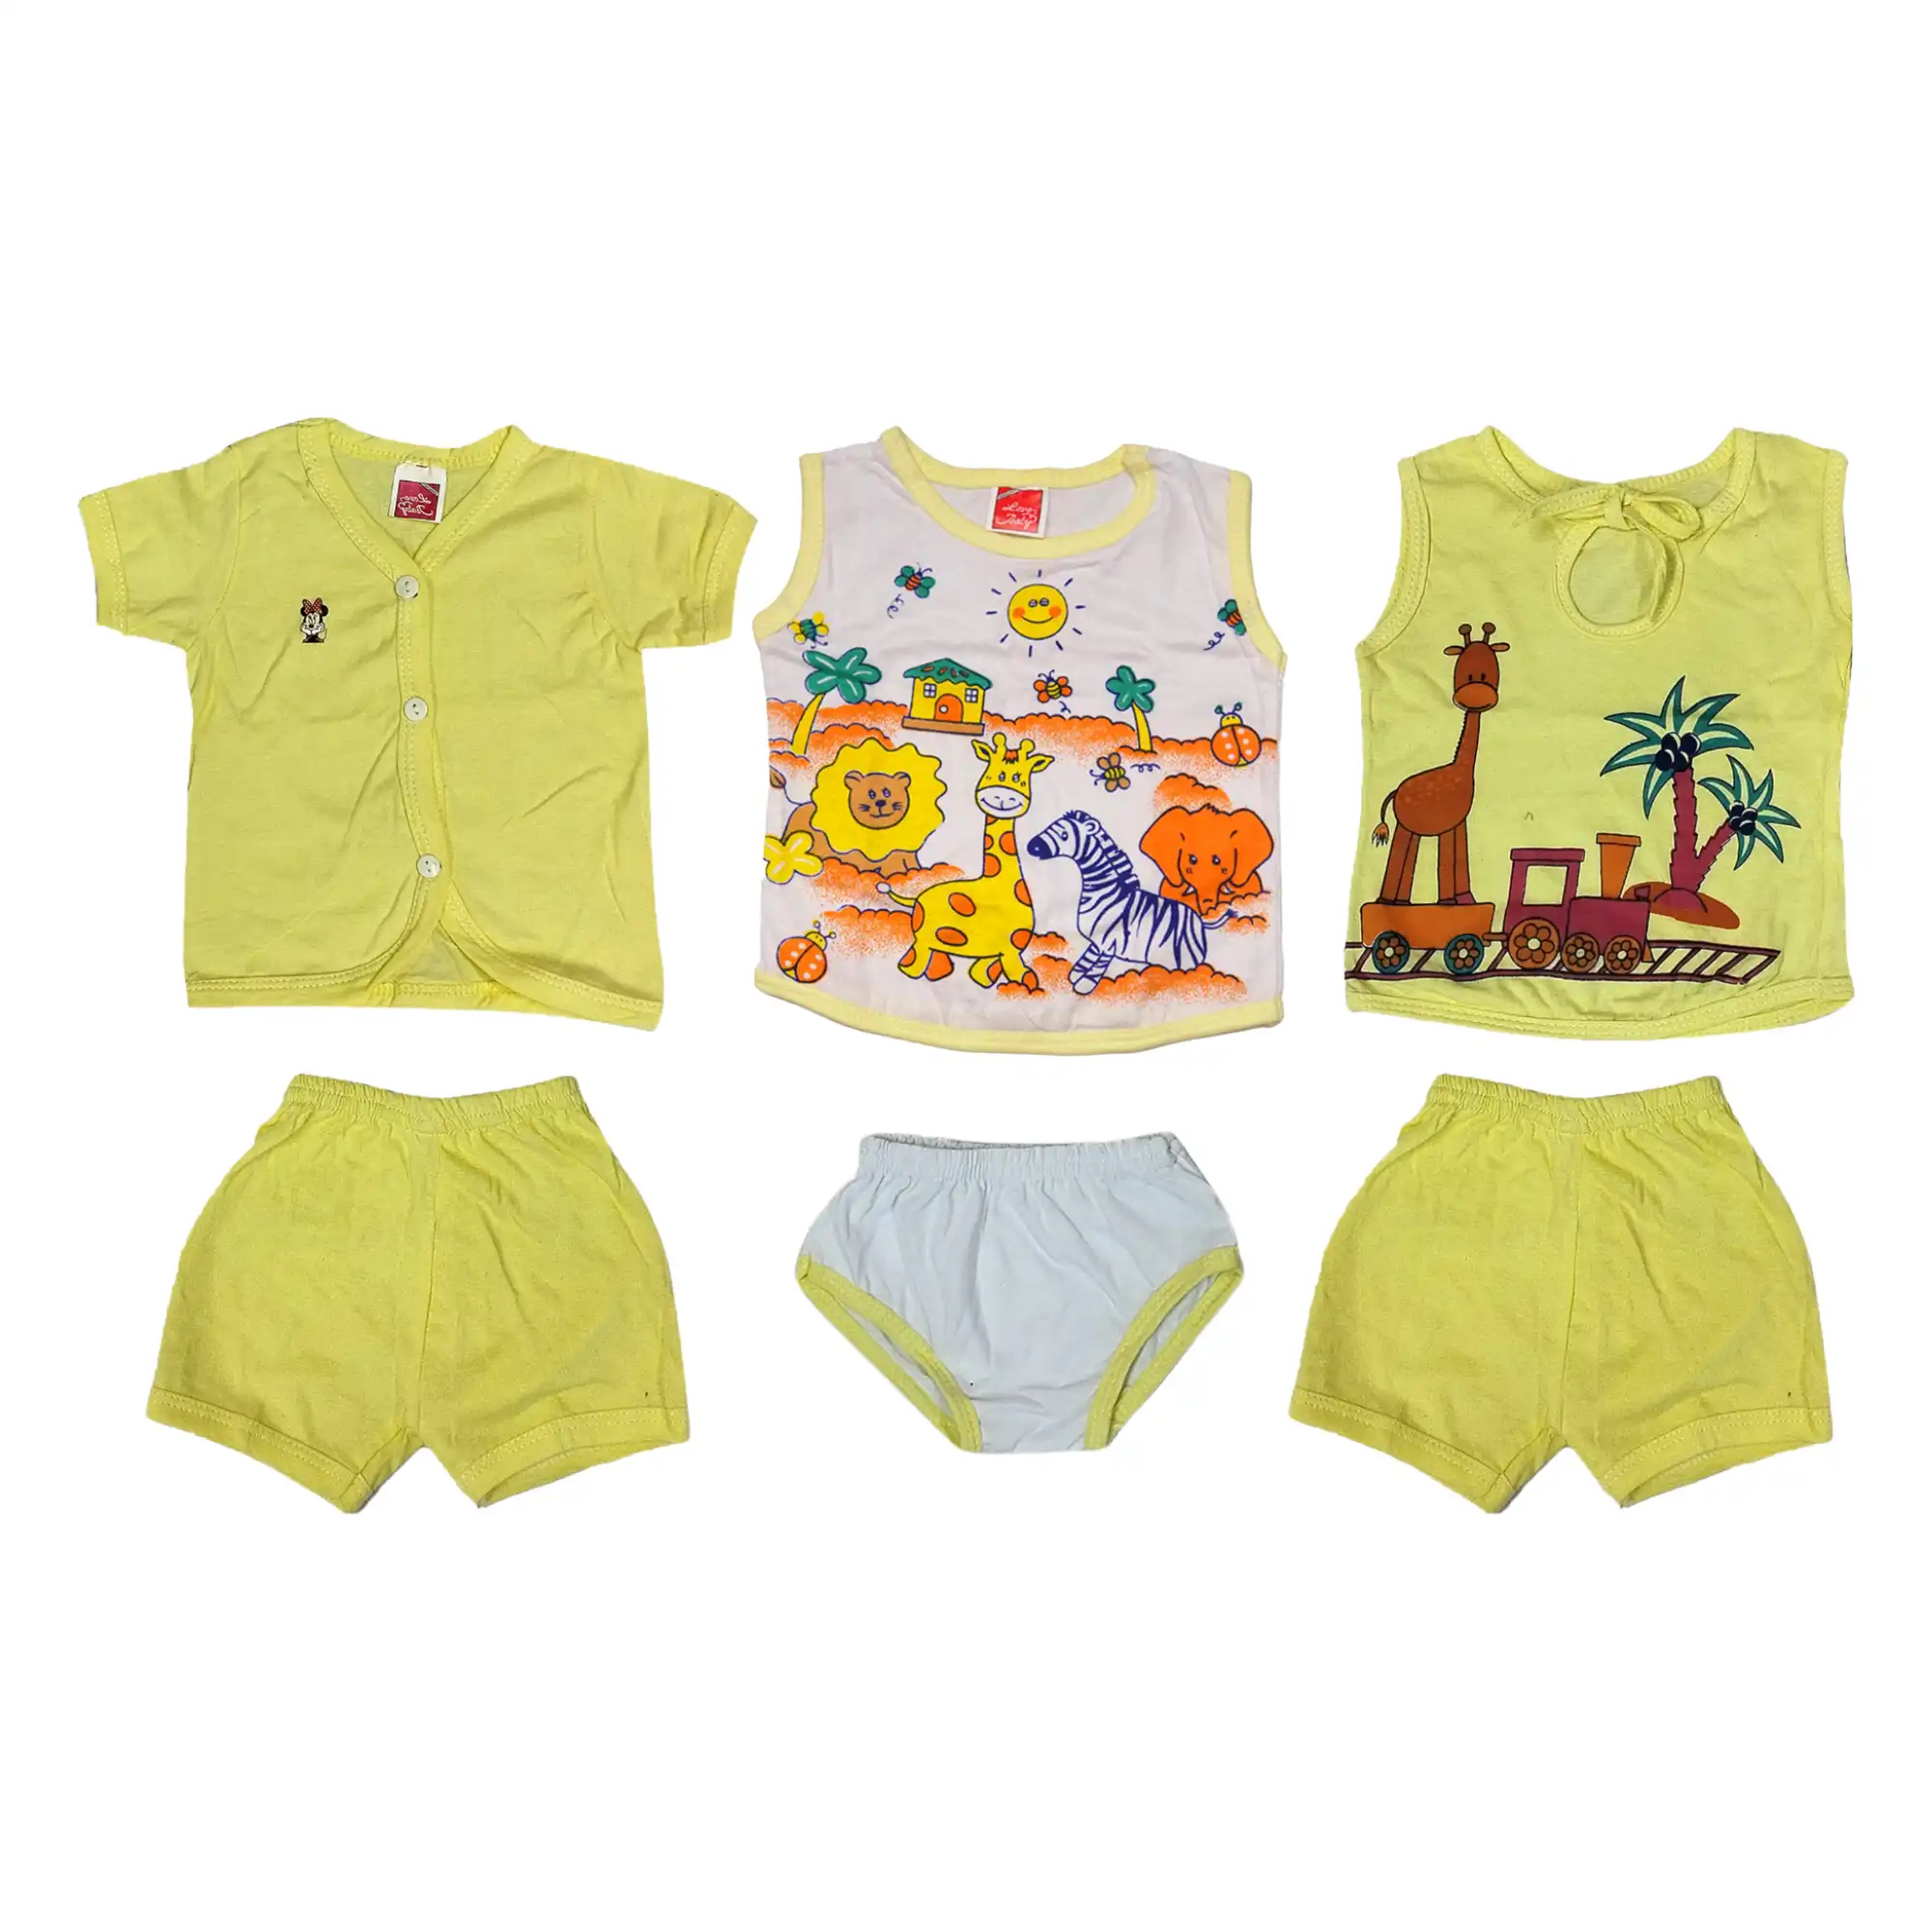 Newborn Baby Clothing Set of 3 Yellow 2